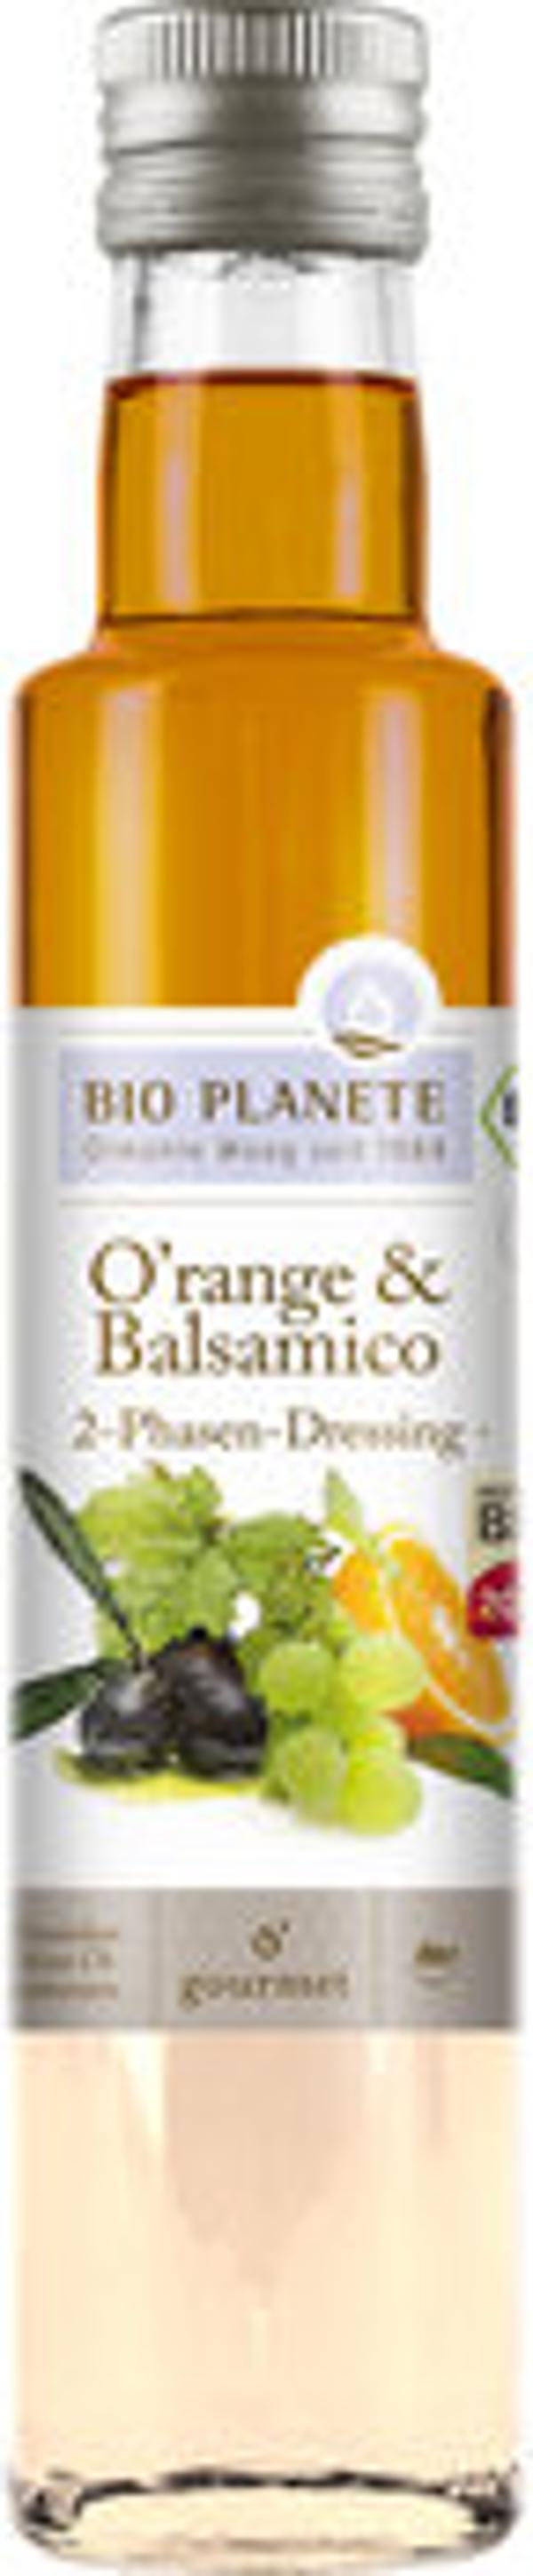 Produktfoto zu Bio Planète O'range und Balsamico Essig 250ml